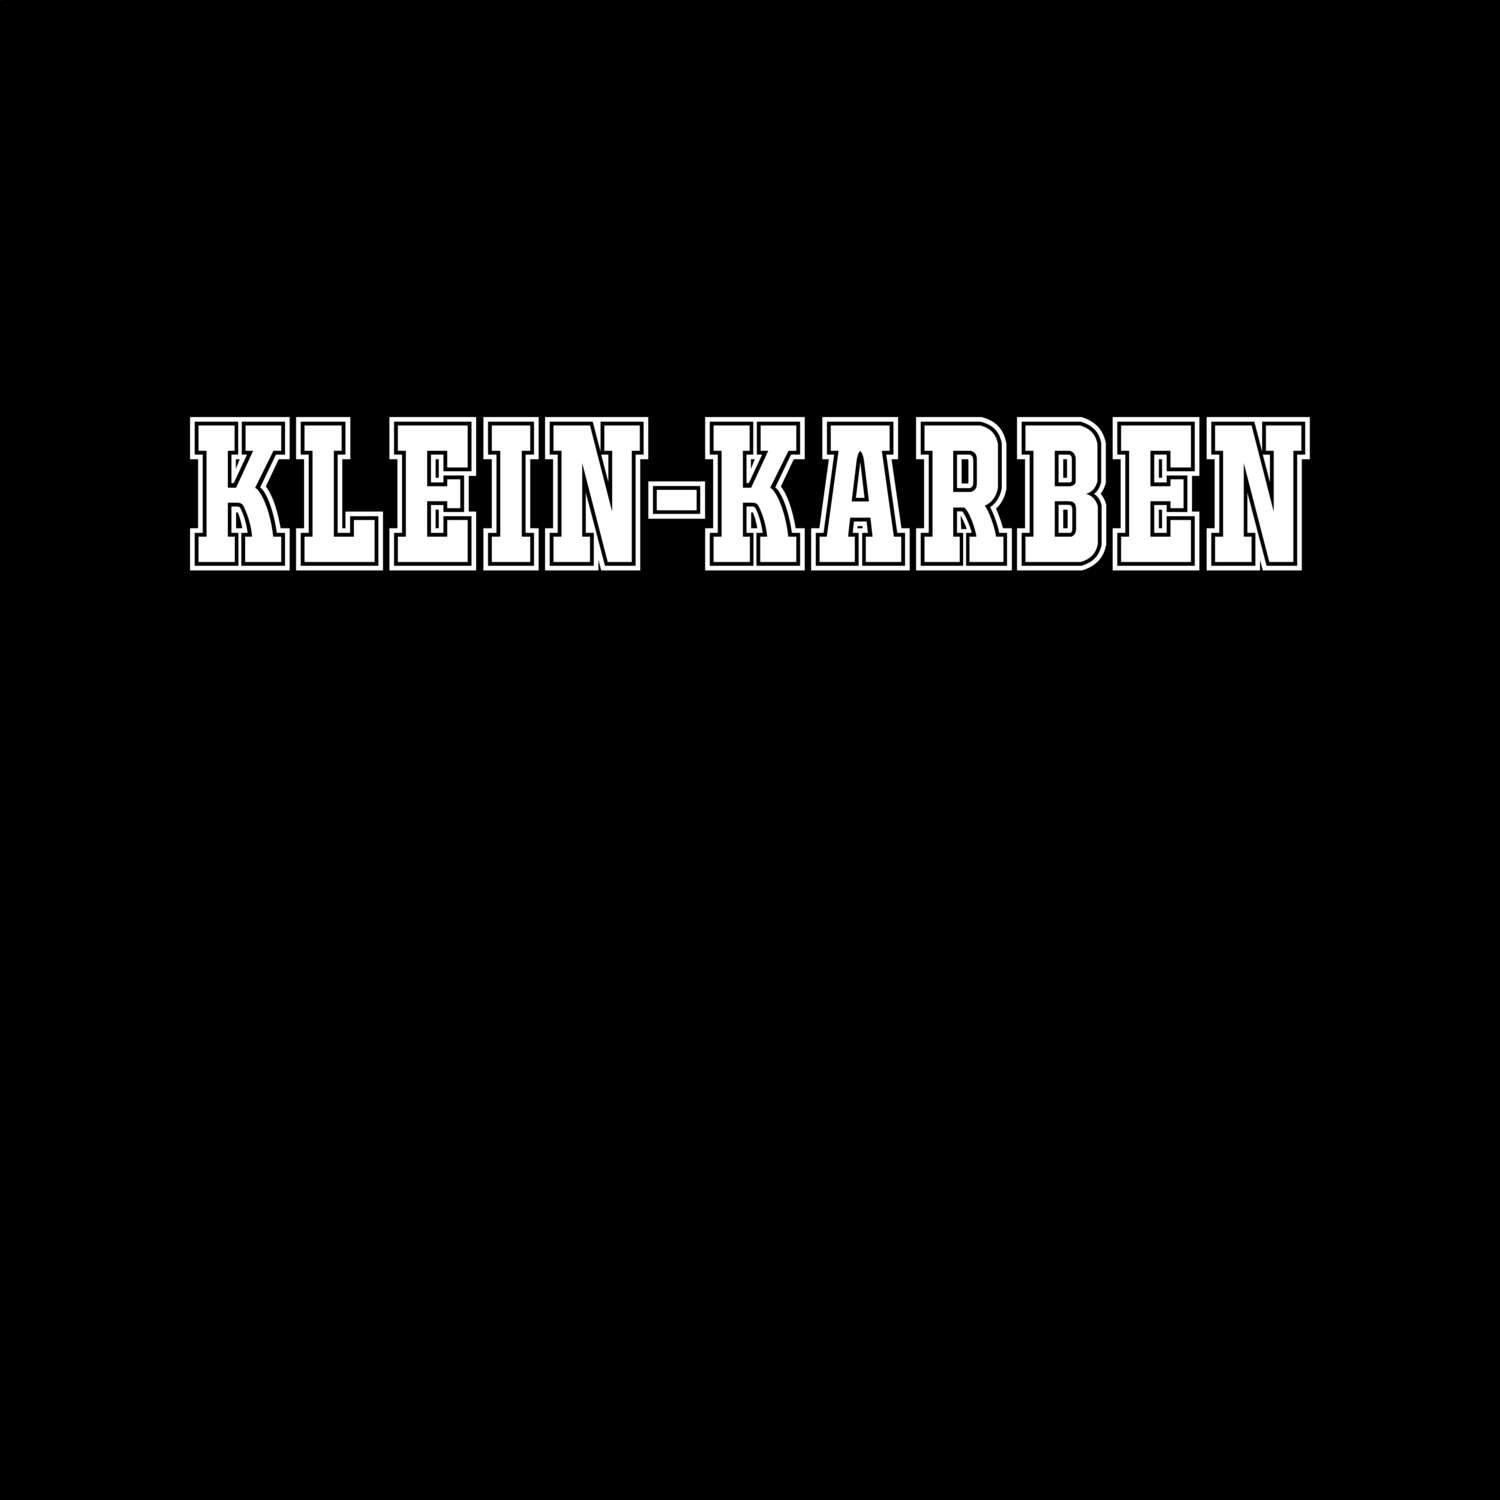 Klein-Karben T-Shirt »Classic«